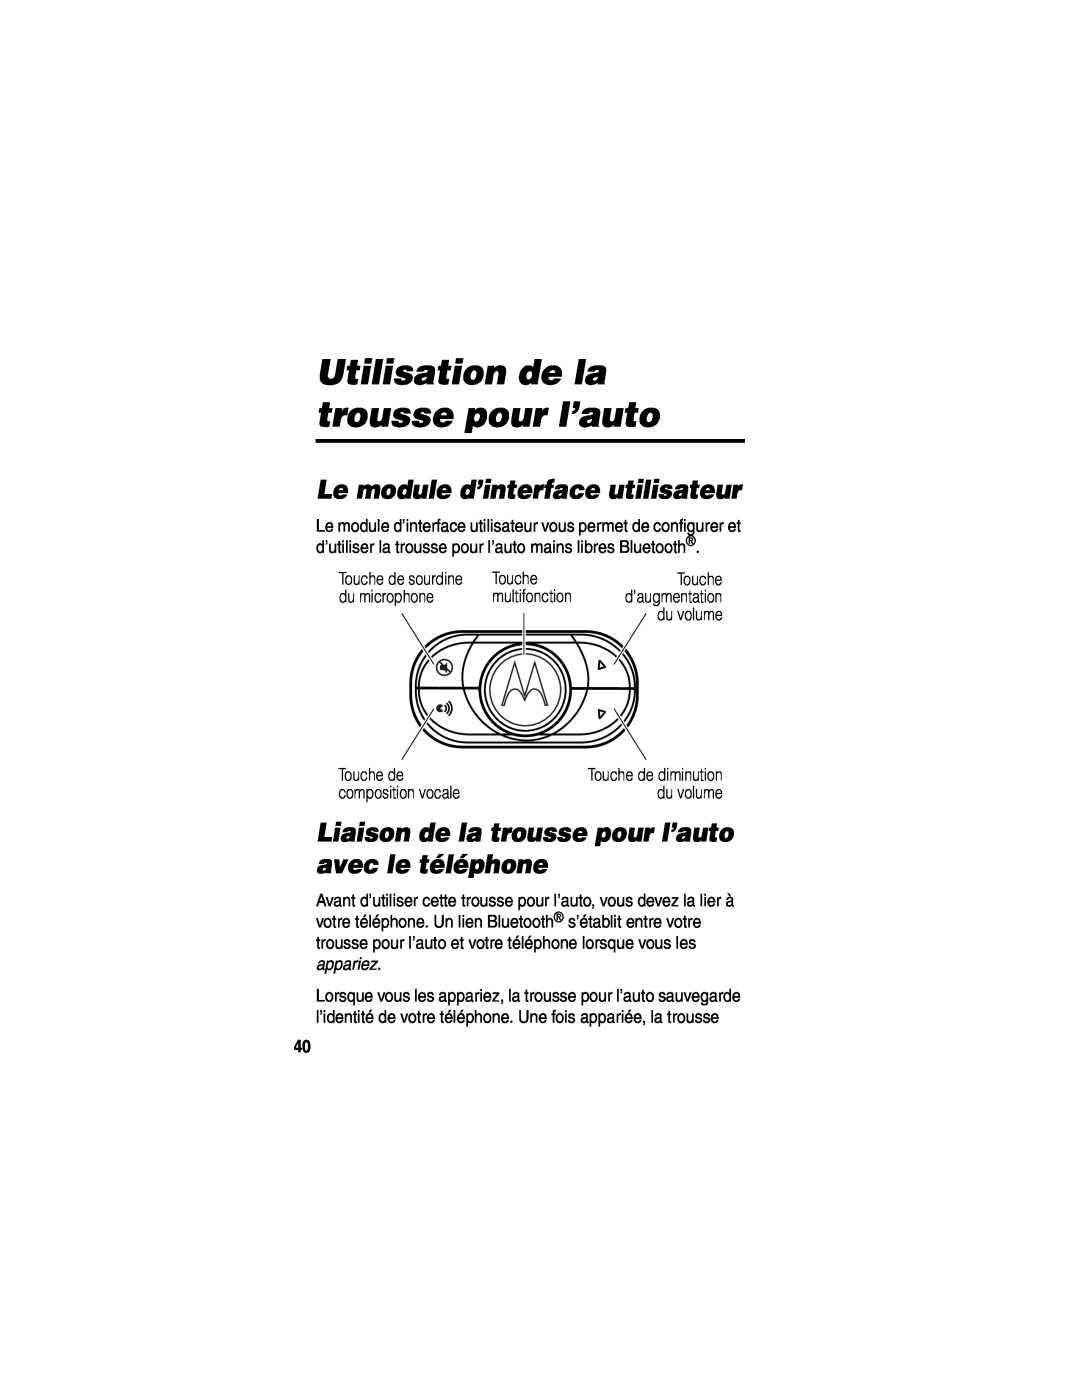 Motorola HF850 manual Utilisation de la trousse pour l’auto, Le module d’interface utilisateur 